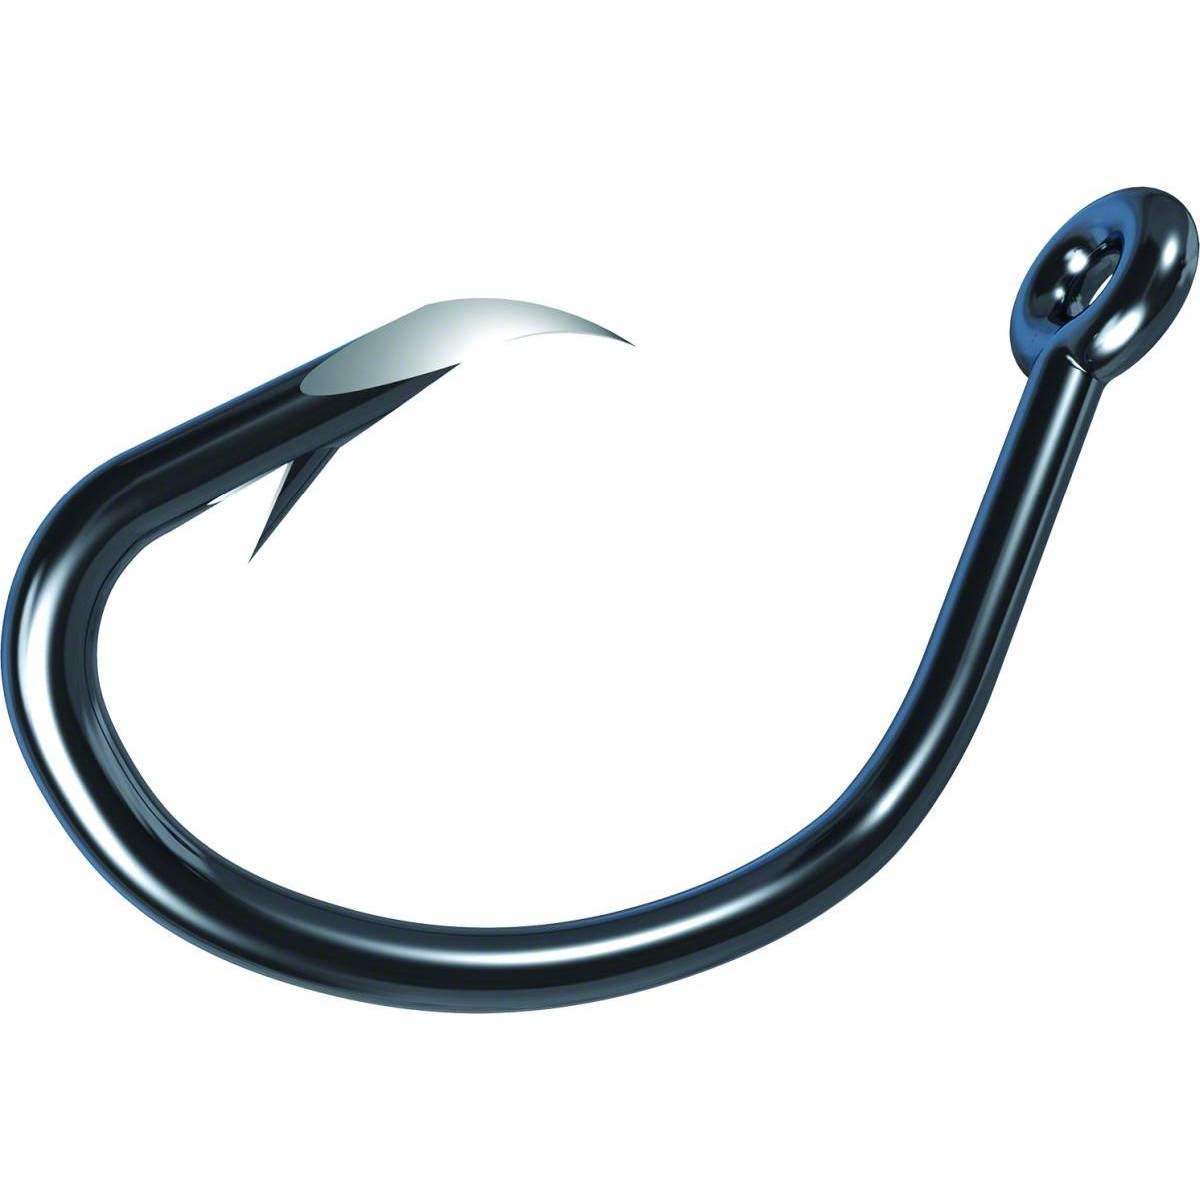 Eagle Claw Tk619-4/0 Trokar Circle Offset Hook - Black Chrome, Size 4/0